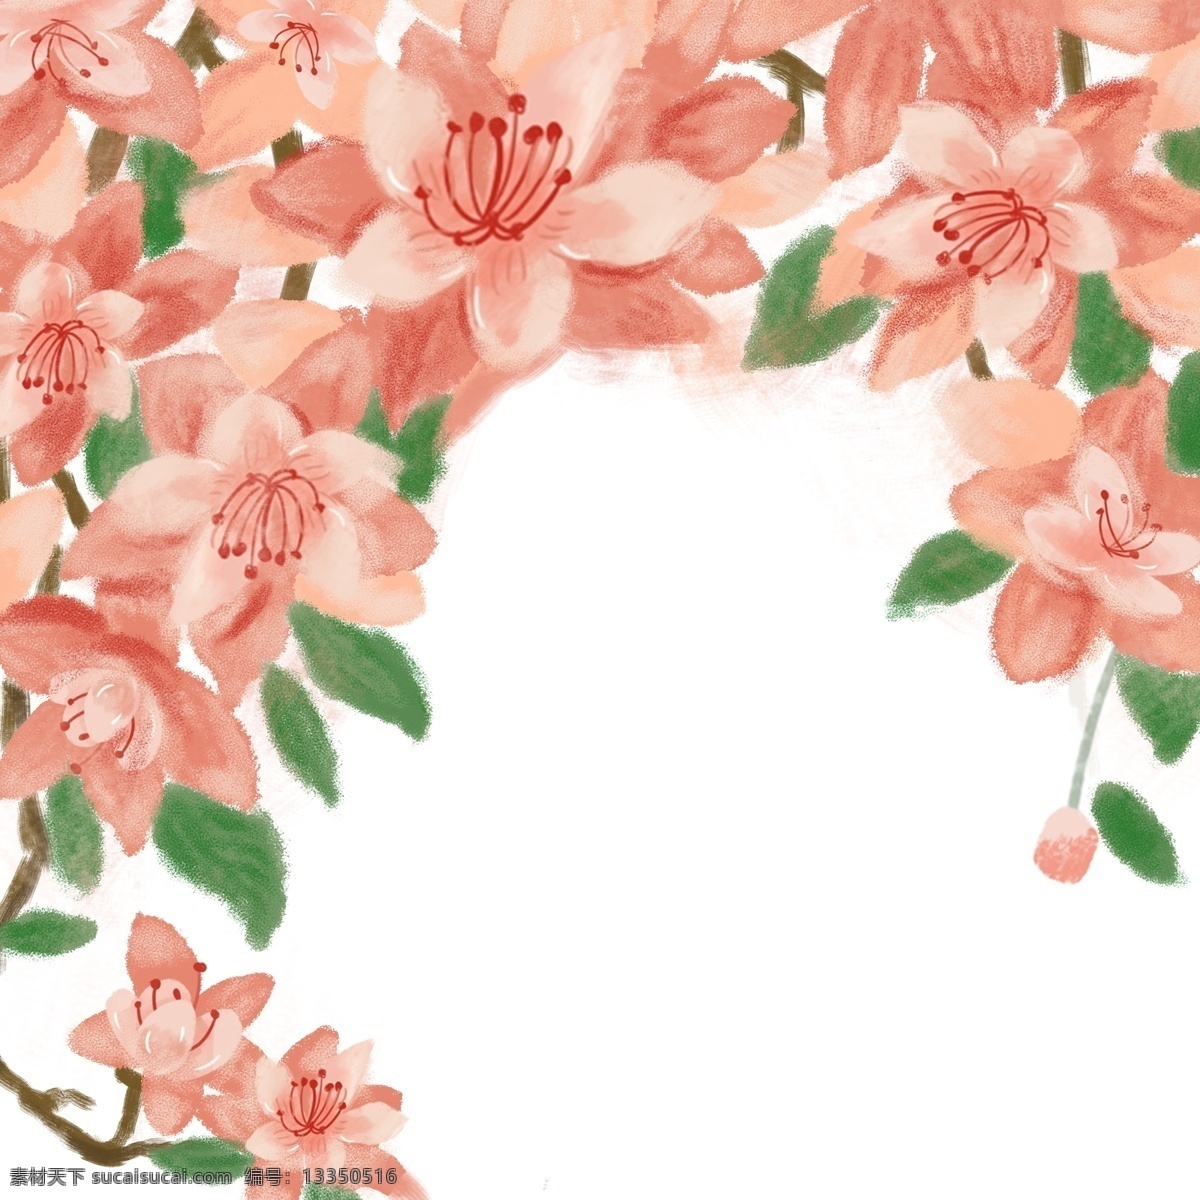 粉红色 的卡 通 手绘 花墙 背景 免 抠 图 万花丛中 鲜花 红色花朵 花朵背景 香花朵朵开